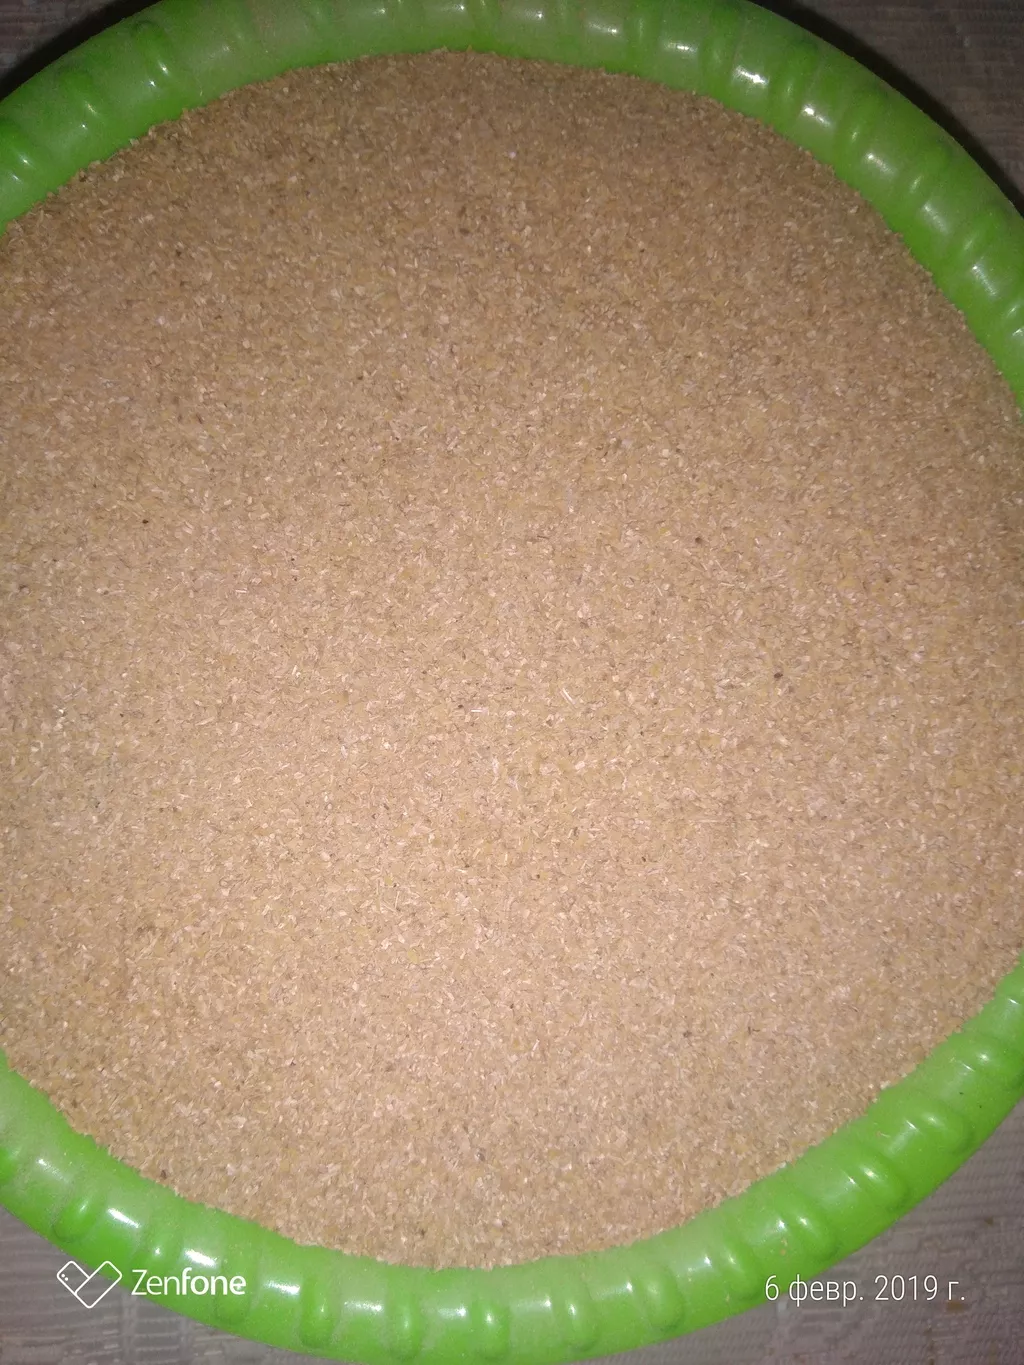 рисовая лузга  фракция от 0.7 до 3.0 мм  в Краснодаре 7